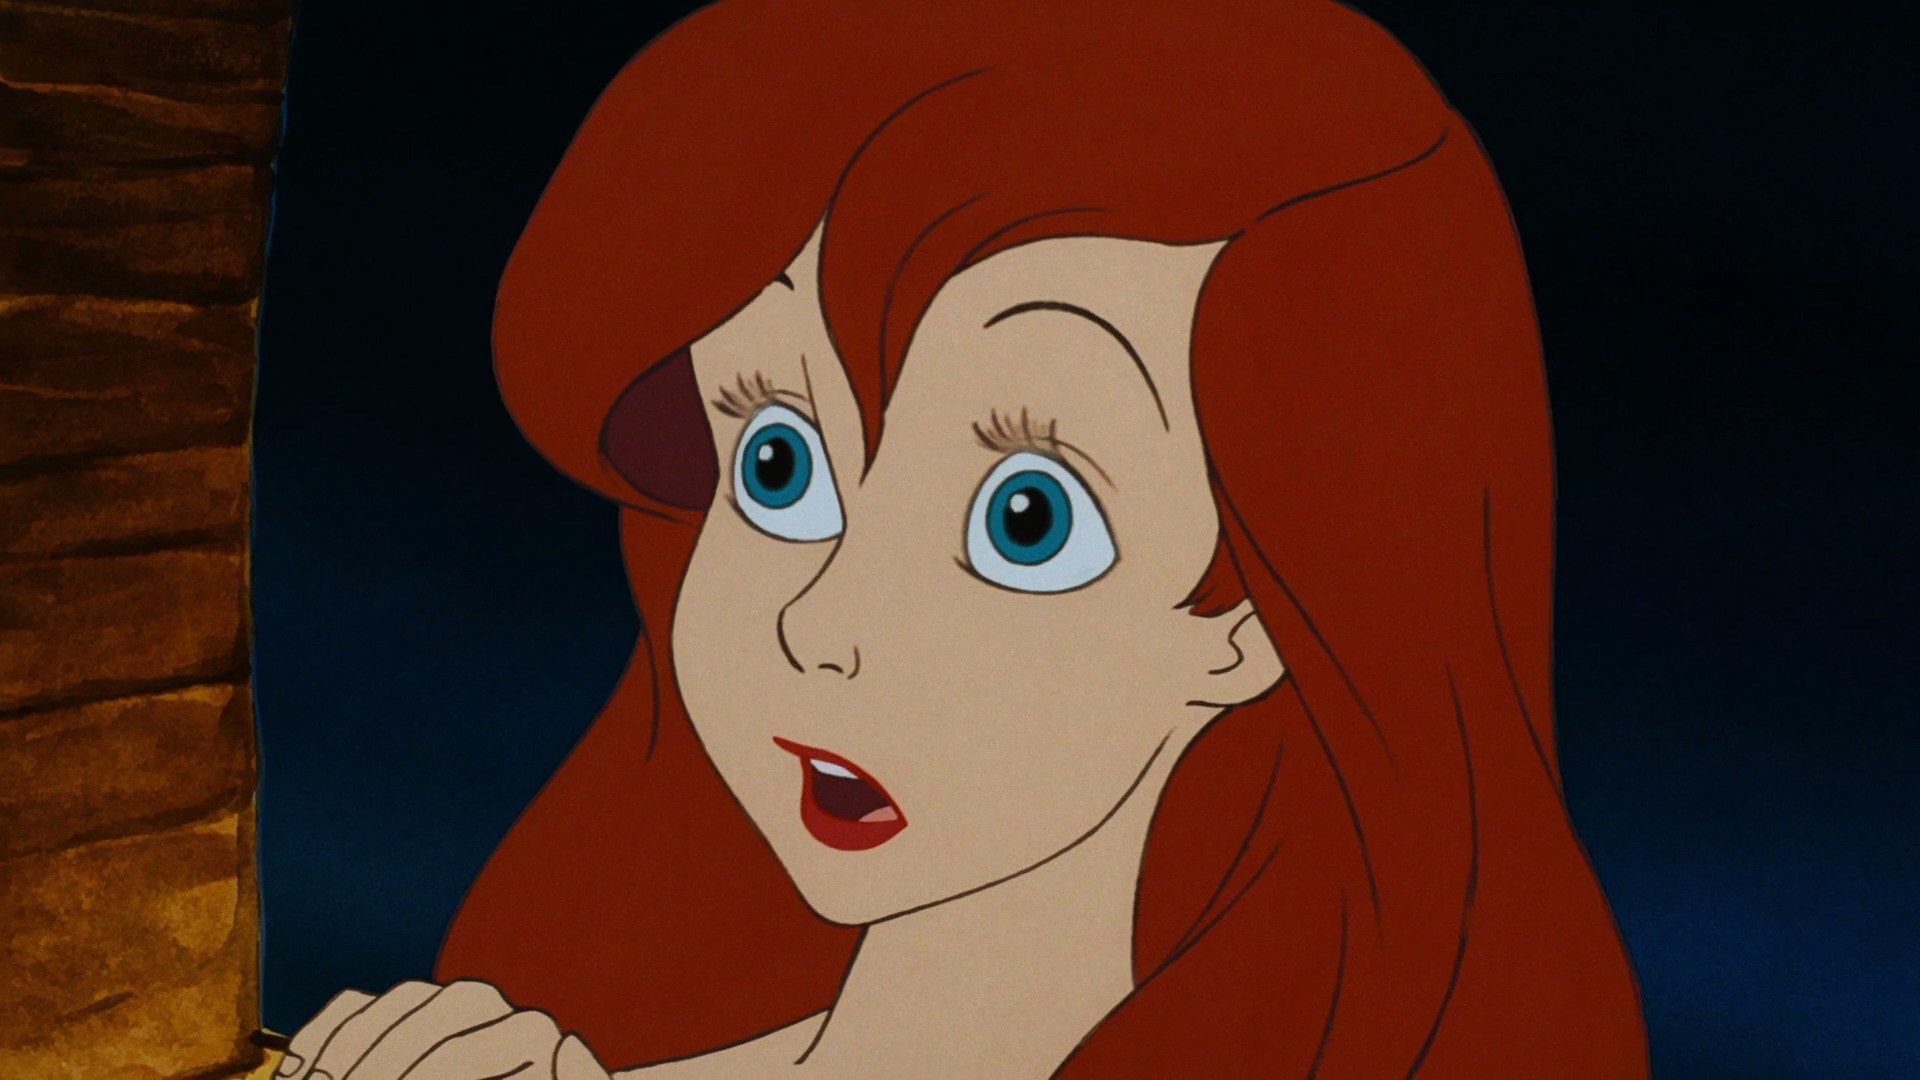 Descarga gratuita de fondo de pantalla para móvil de Sirena, Películas, Cabello Rojo, La Sirenita, Ariel (La Sirenita), La Sirenita (1989).